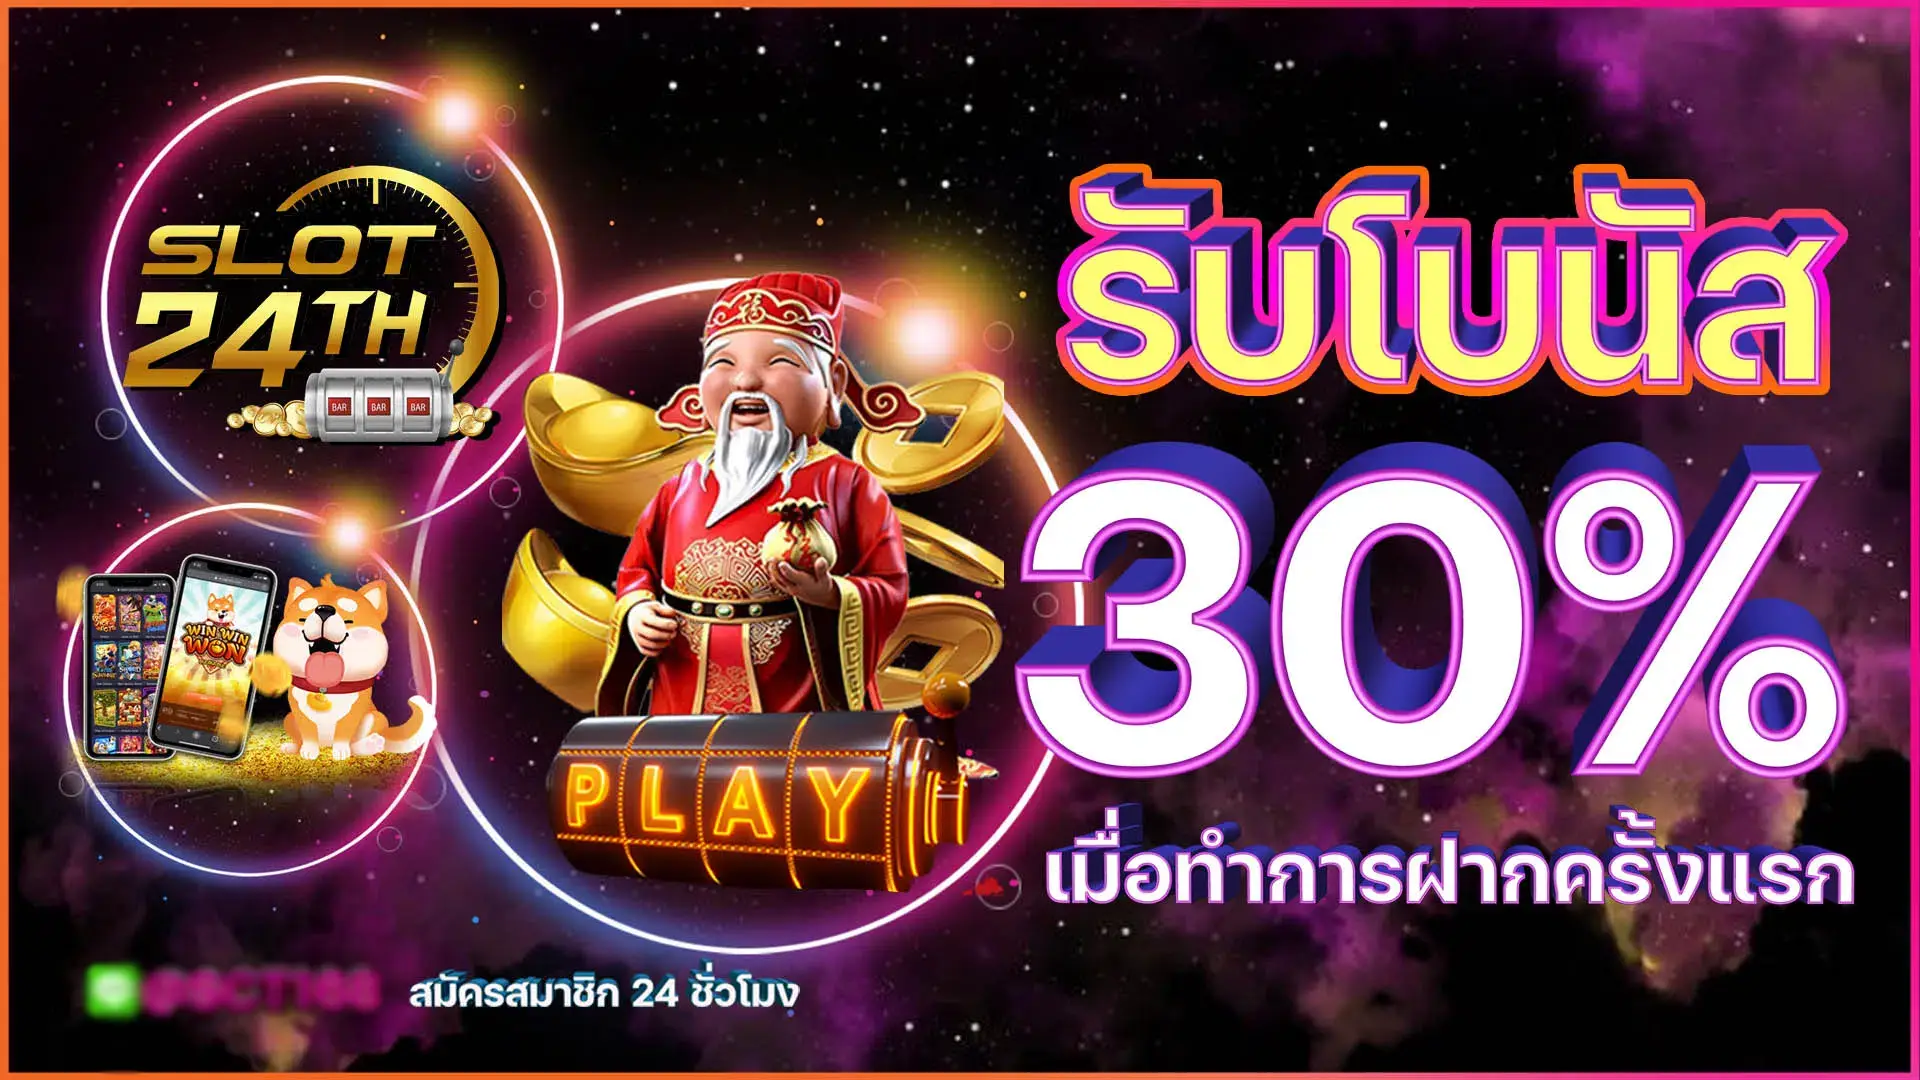 เข้าร่วมสนุกกับเกมสล็อตที่น่าตื่นเต้นที่สุดกับ slot24th ทางเข้า เดียวในเมืองไทย!